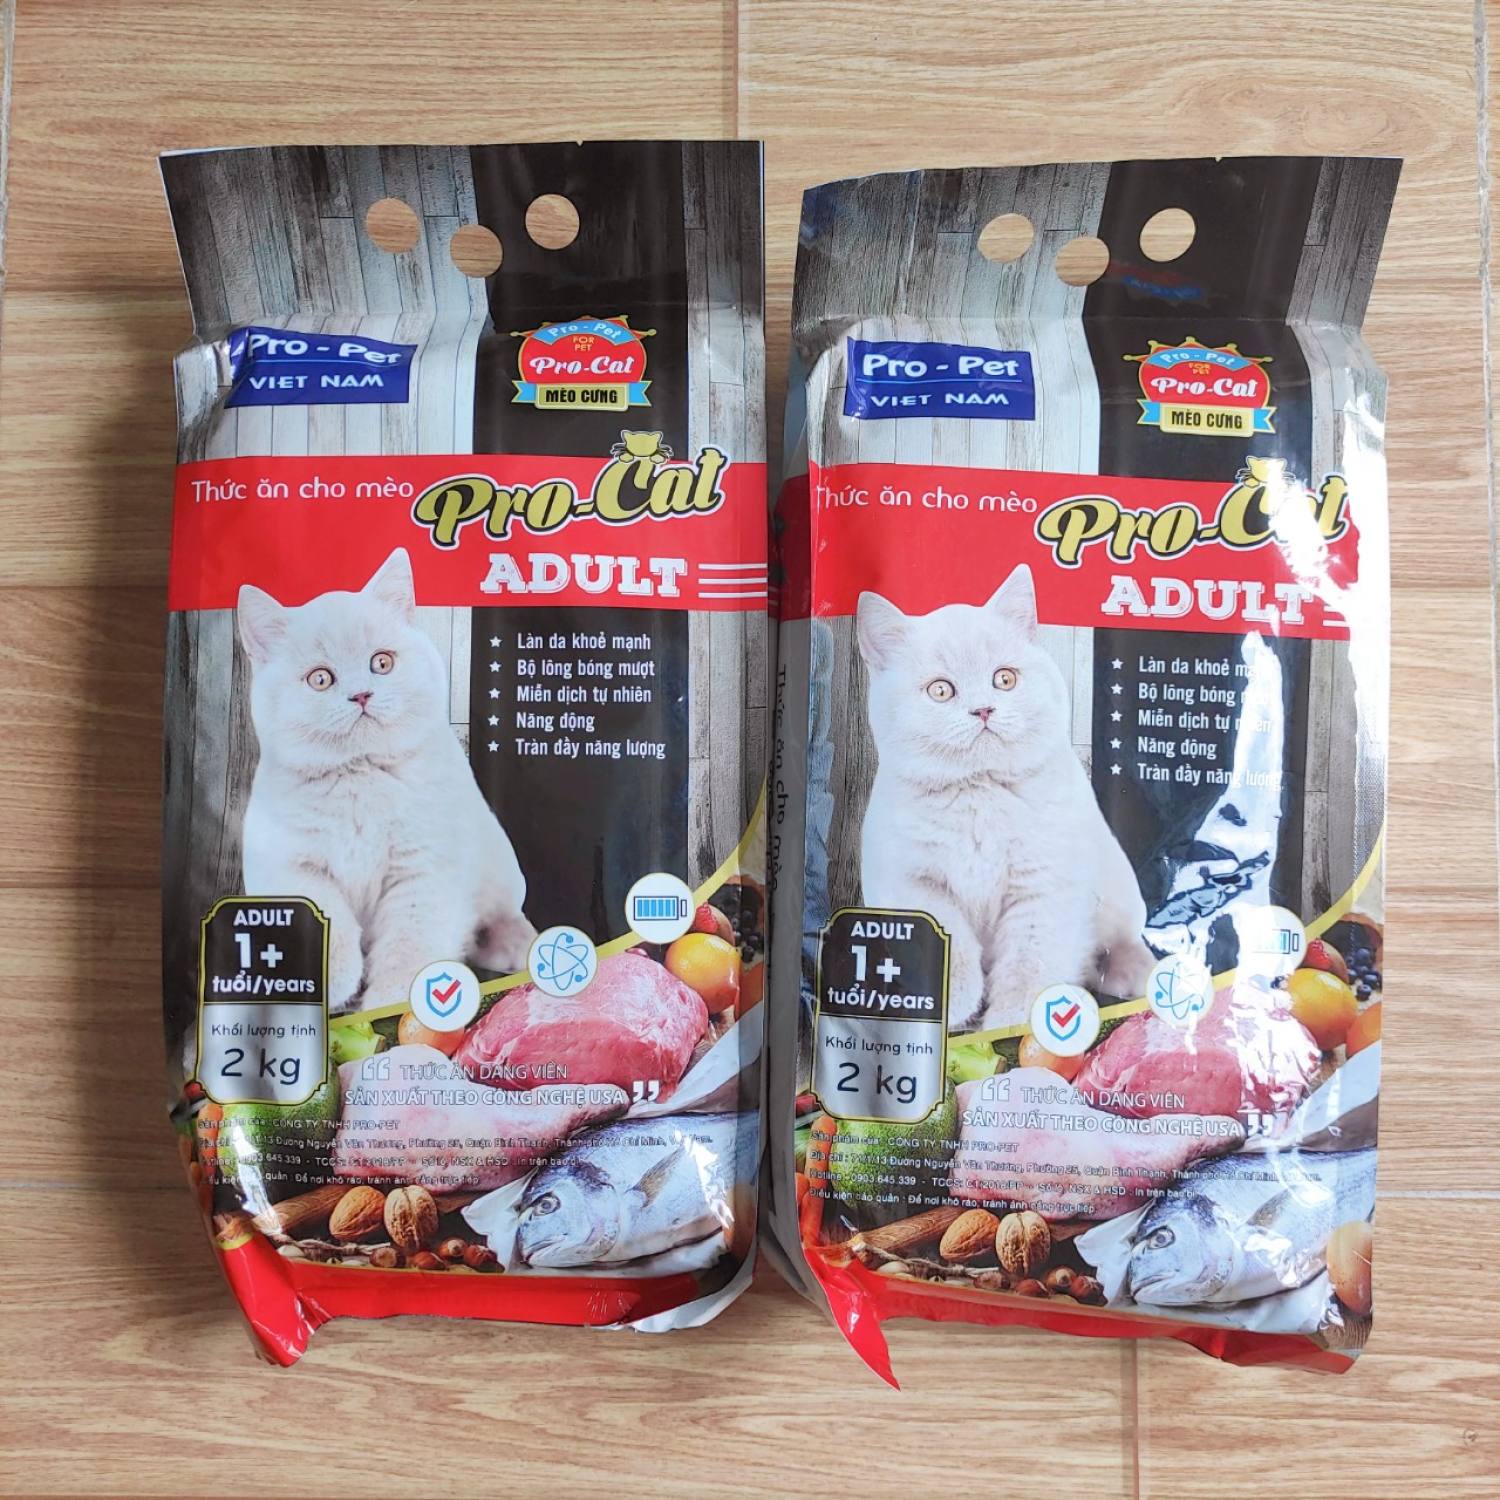 Thức Ăn Hạt Cho Mèo Lớn Mèo Trưởng Thành PRO-CAT Adult Túi 2kg